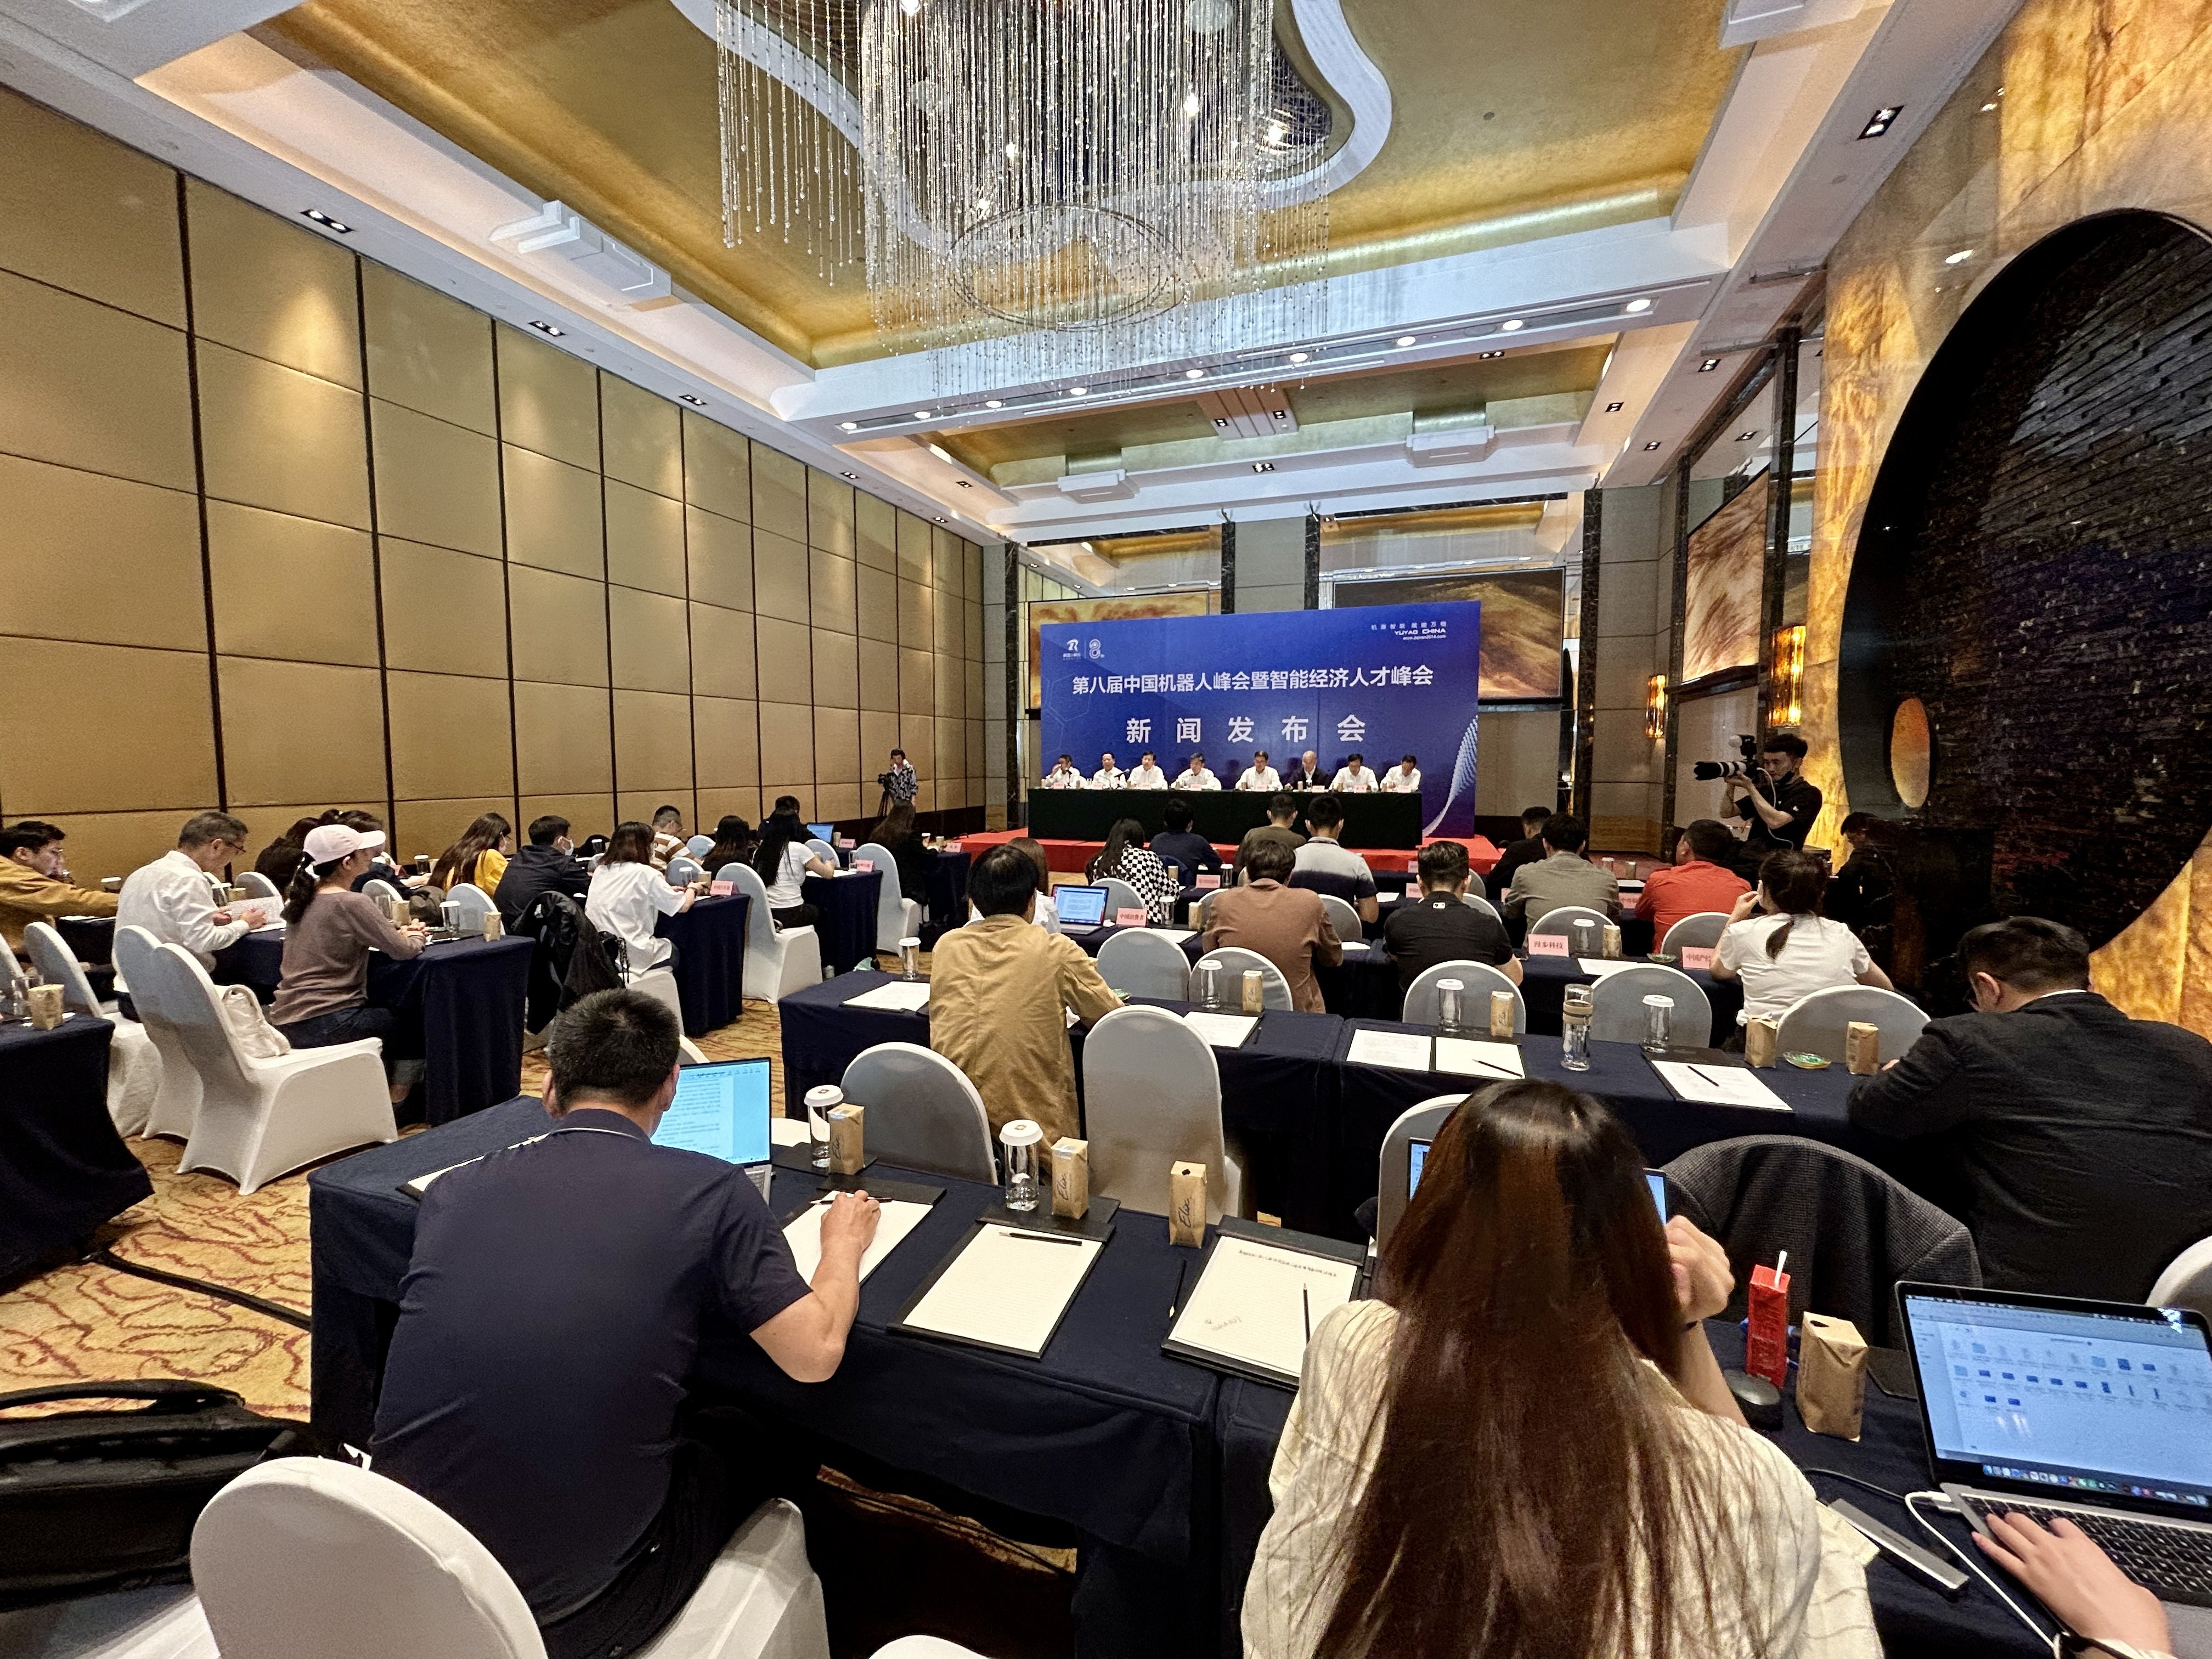 第八届中国机器人峰会暨智能经济人才峰会将于5月23日在浙江余姚举行